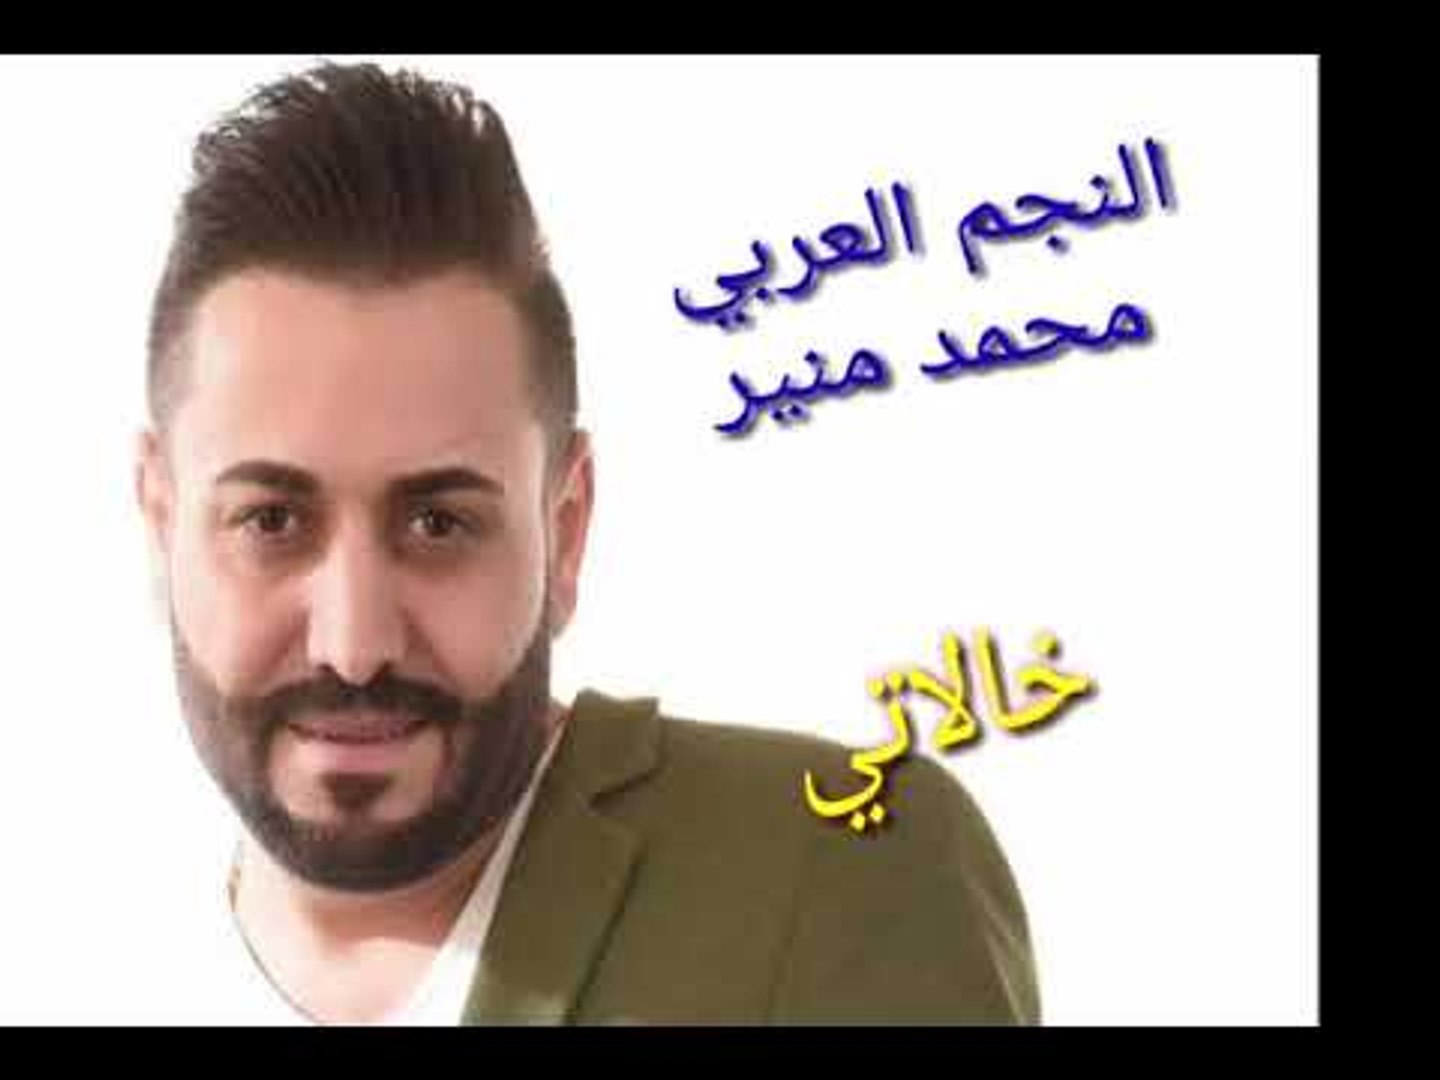 ⁣النجم العربي محمد منير اغنية (خالاتي ) من الارشيف الجميل والممتع انشالله تنال اعجابكم ورضاكم